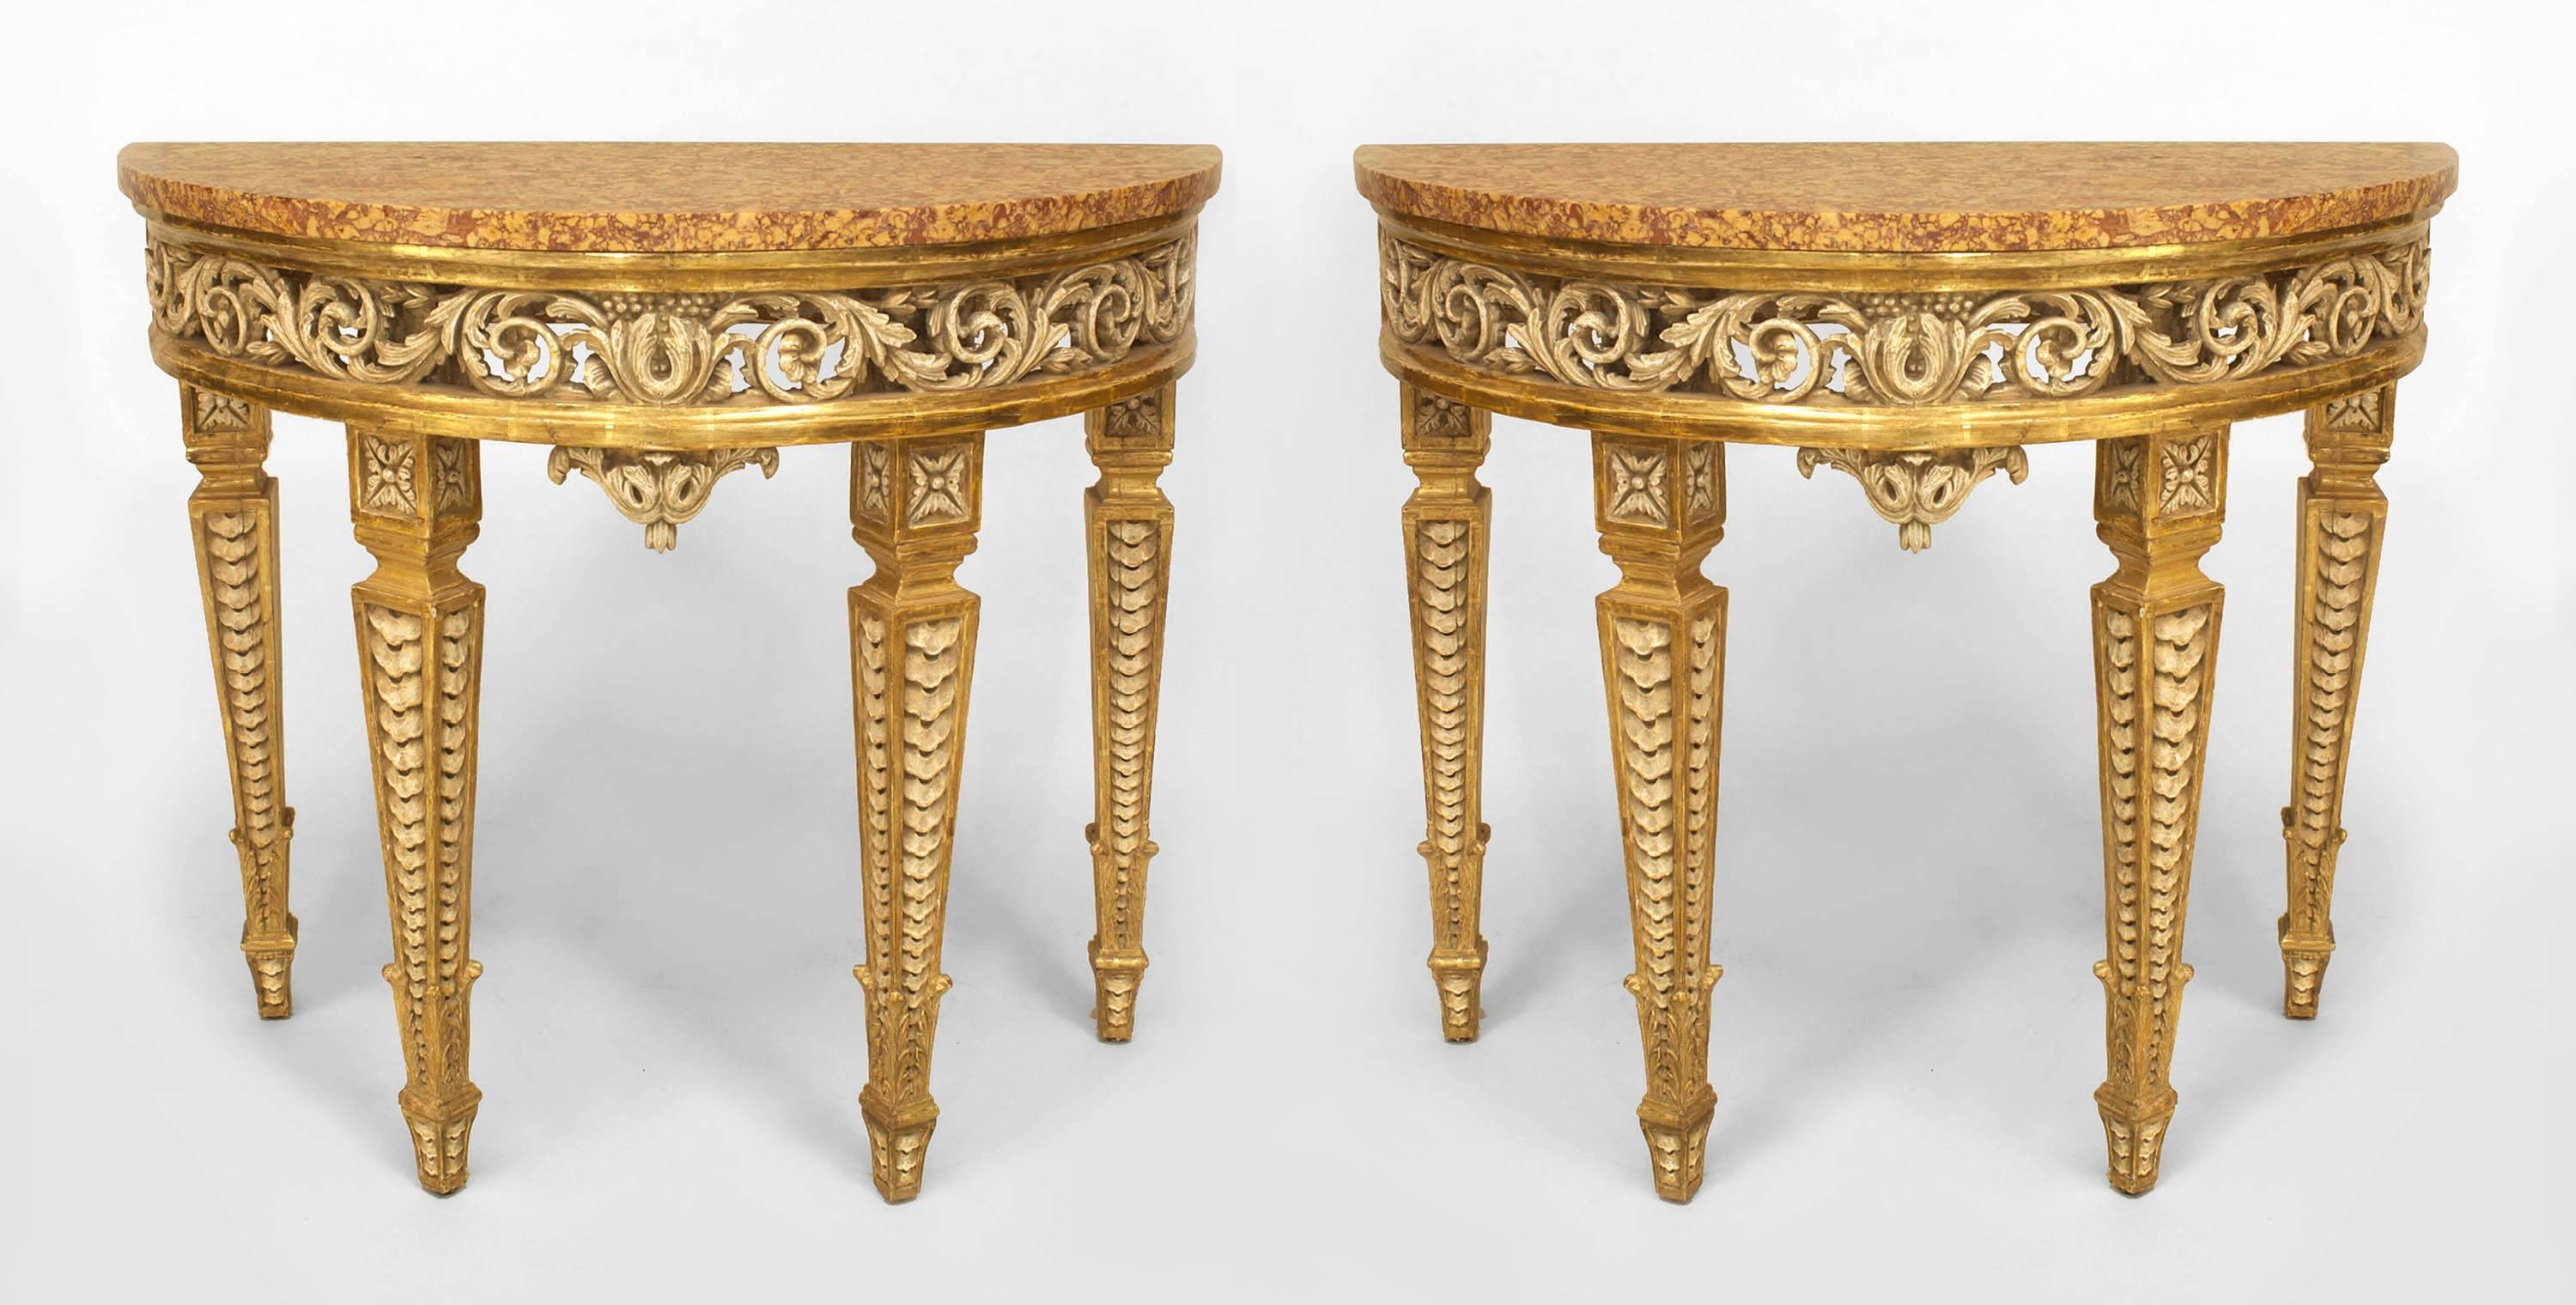 Paire de consoles italiennes néo-classiques (18e siècle) en demilune, peintes en crème et dorées à la feuille, avec un tablier percé, supportées par des pieds fuselés carrés sculptés, avec des plateaux en marbre brocatelle postérieurs (les plateaux